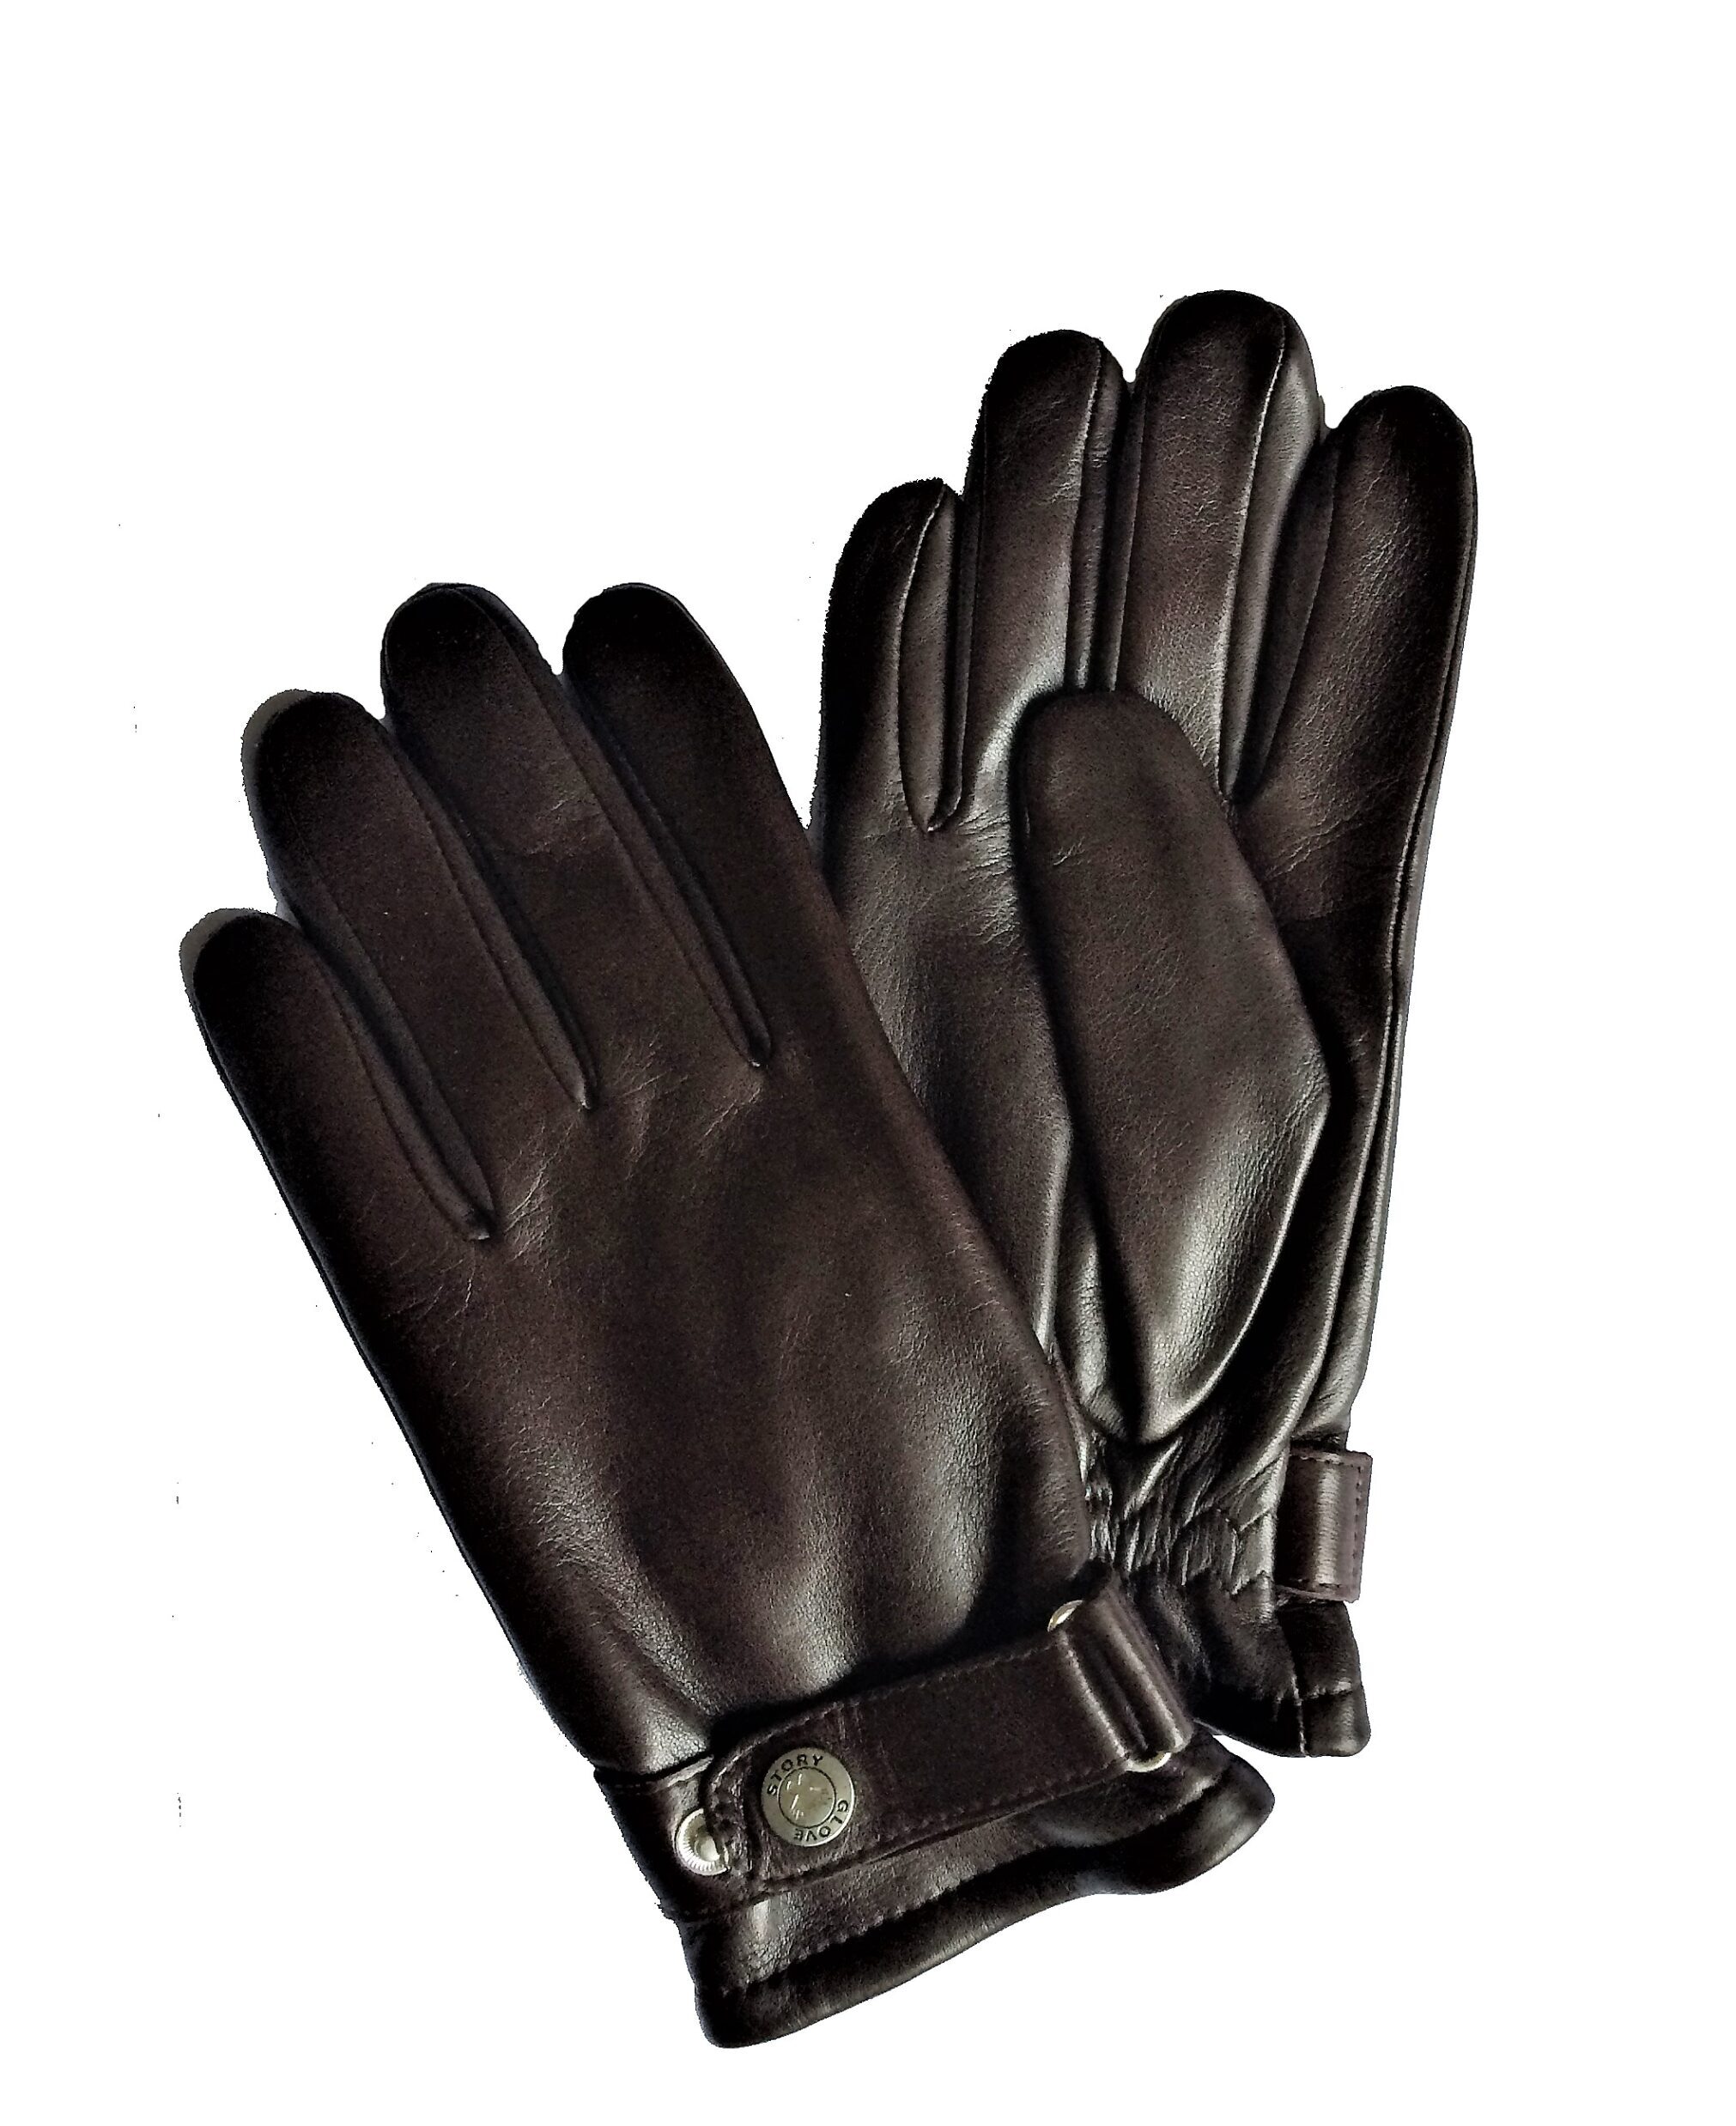 Gants de Conduite Femme Cuir Noir Glove Story - Tous Les Gants